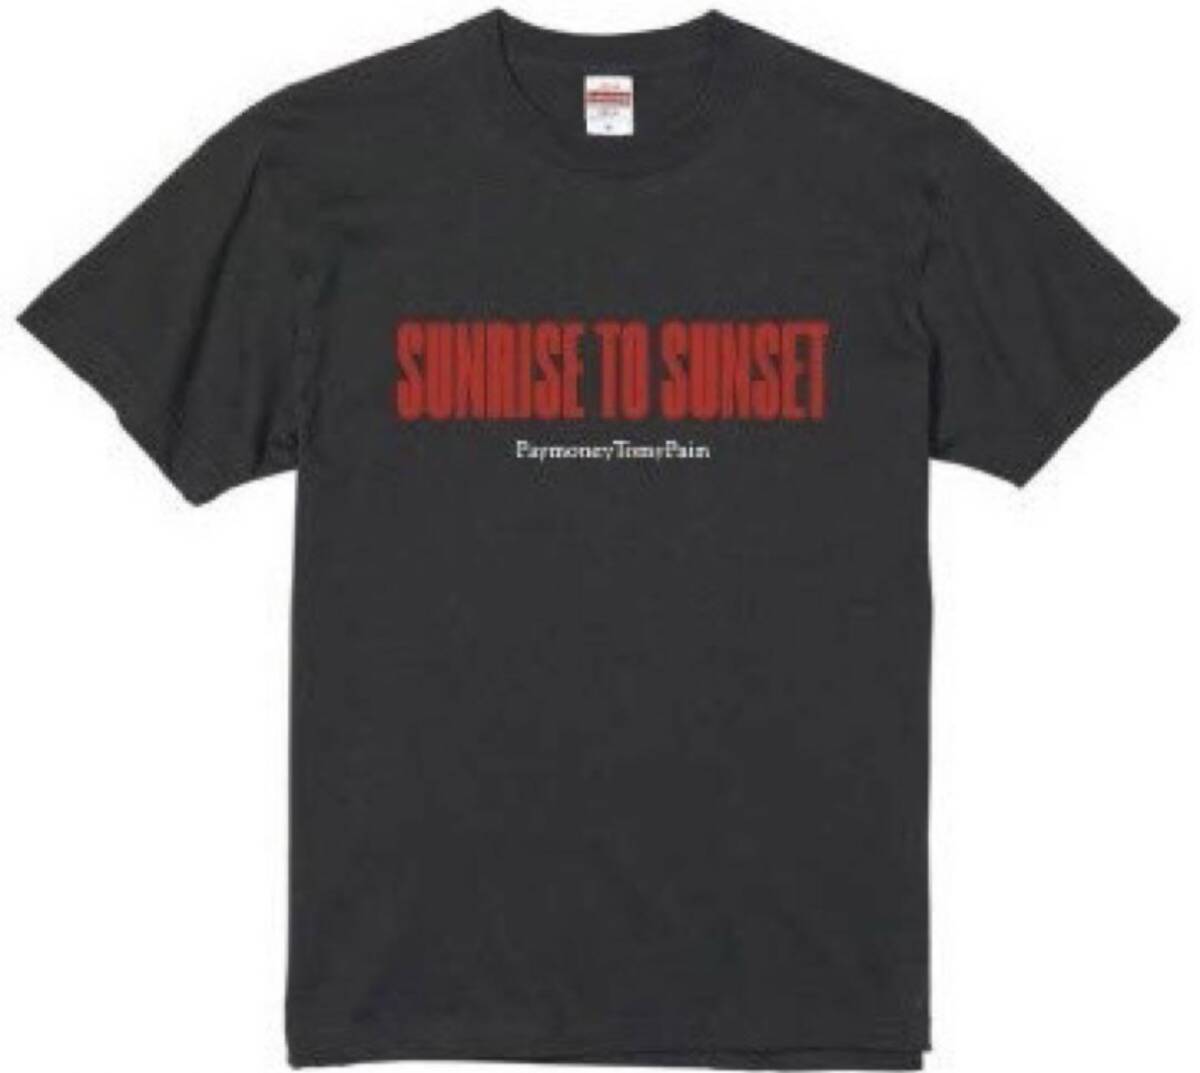 SUNRISE TO SUNSET ピンバッジ & Tシャツ Lサイズ/ pay money to my pain